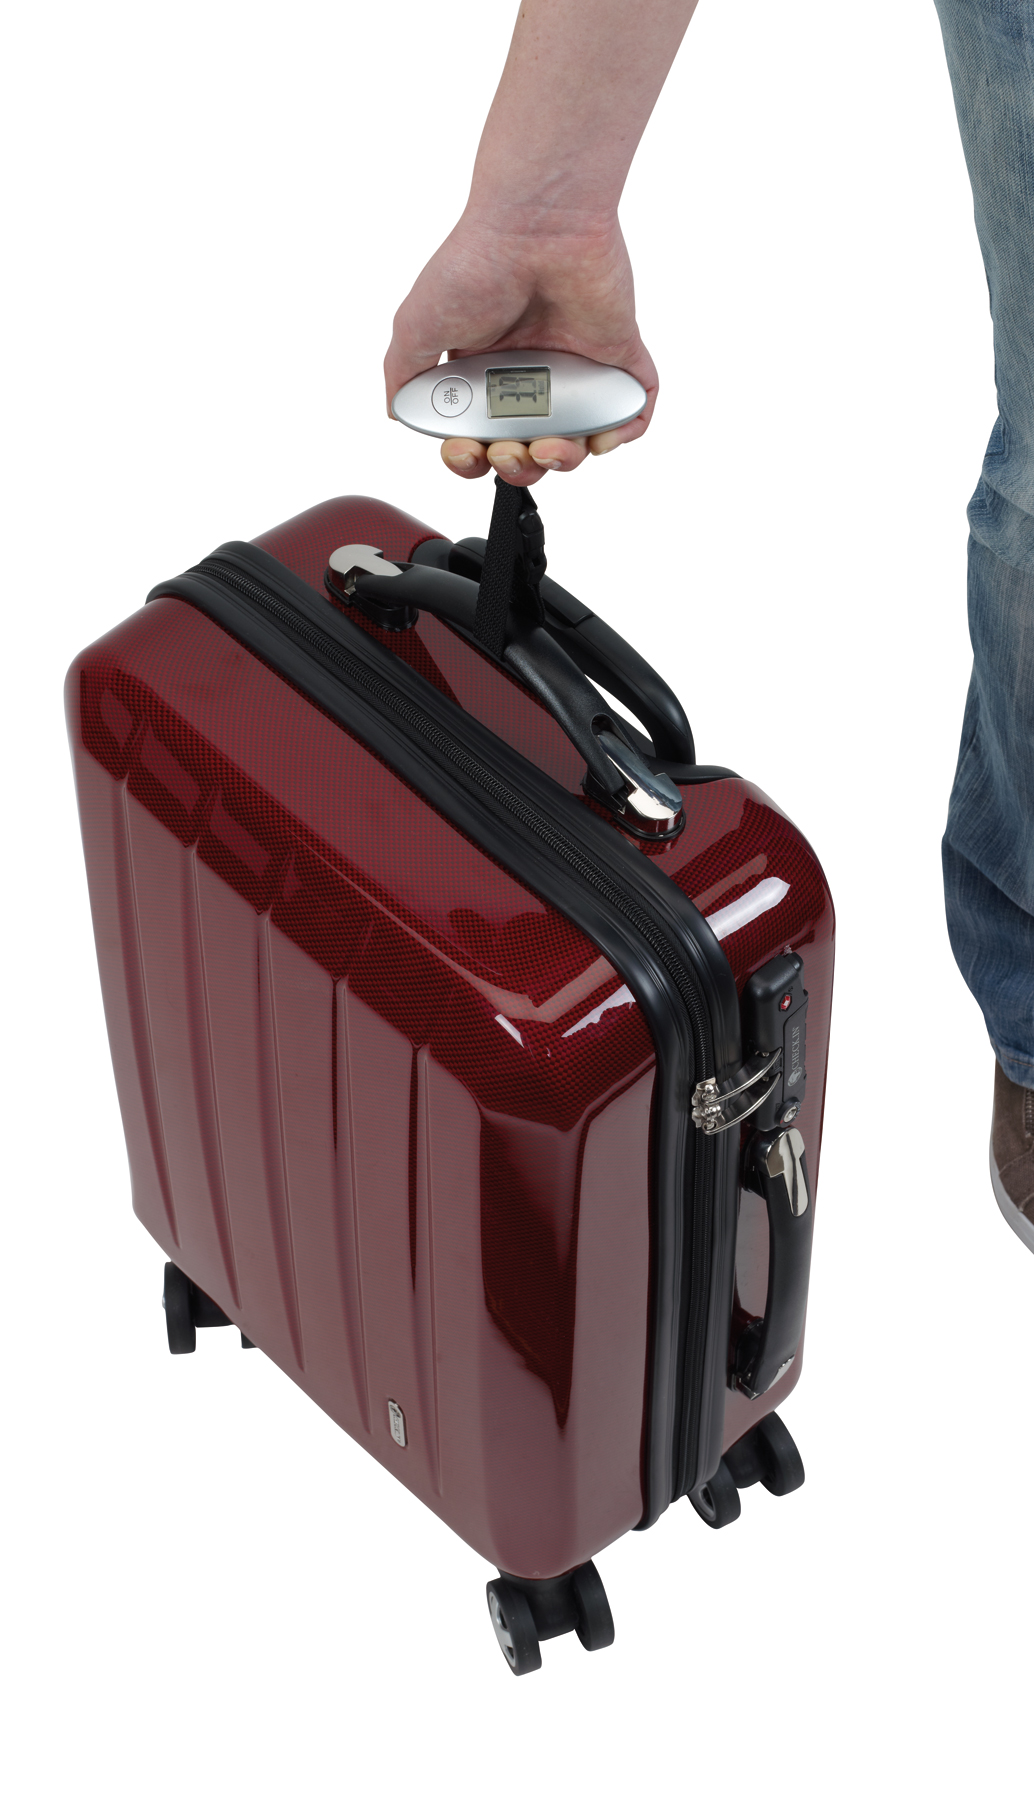 Balanza digital para maletas LIFT OFF, Accesorios Viajes